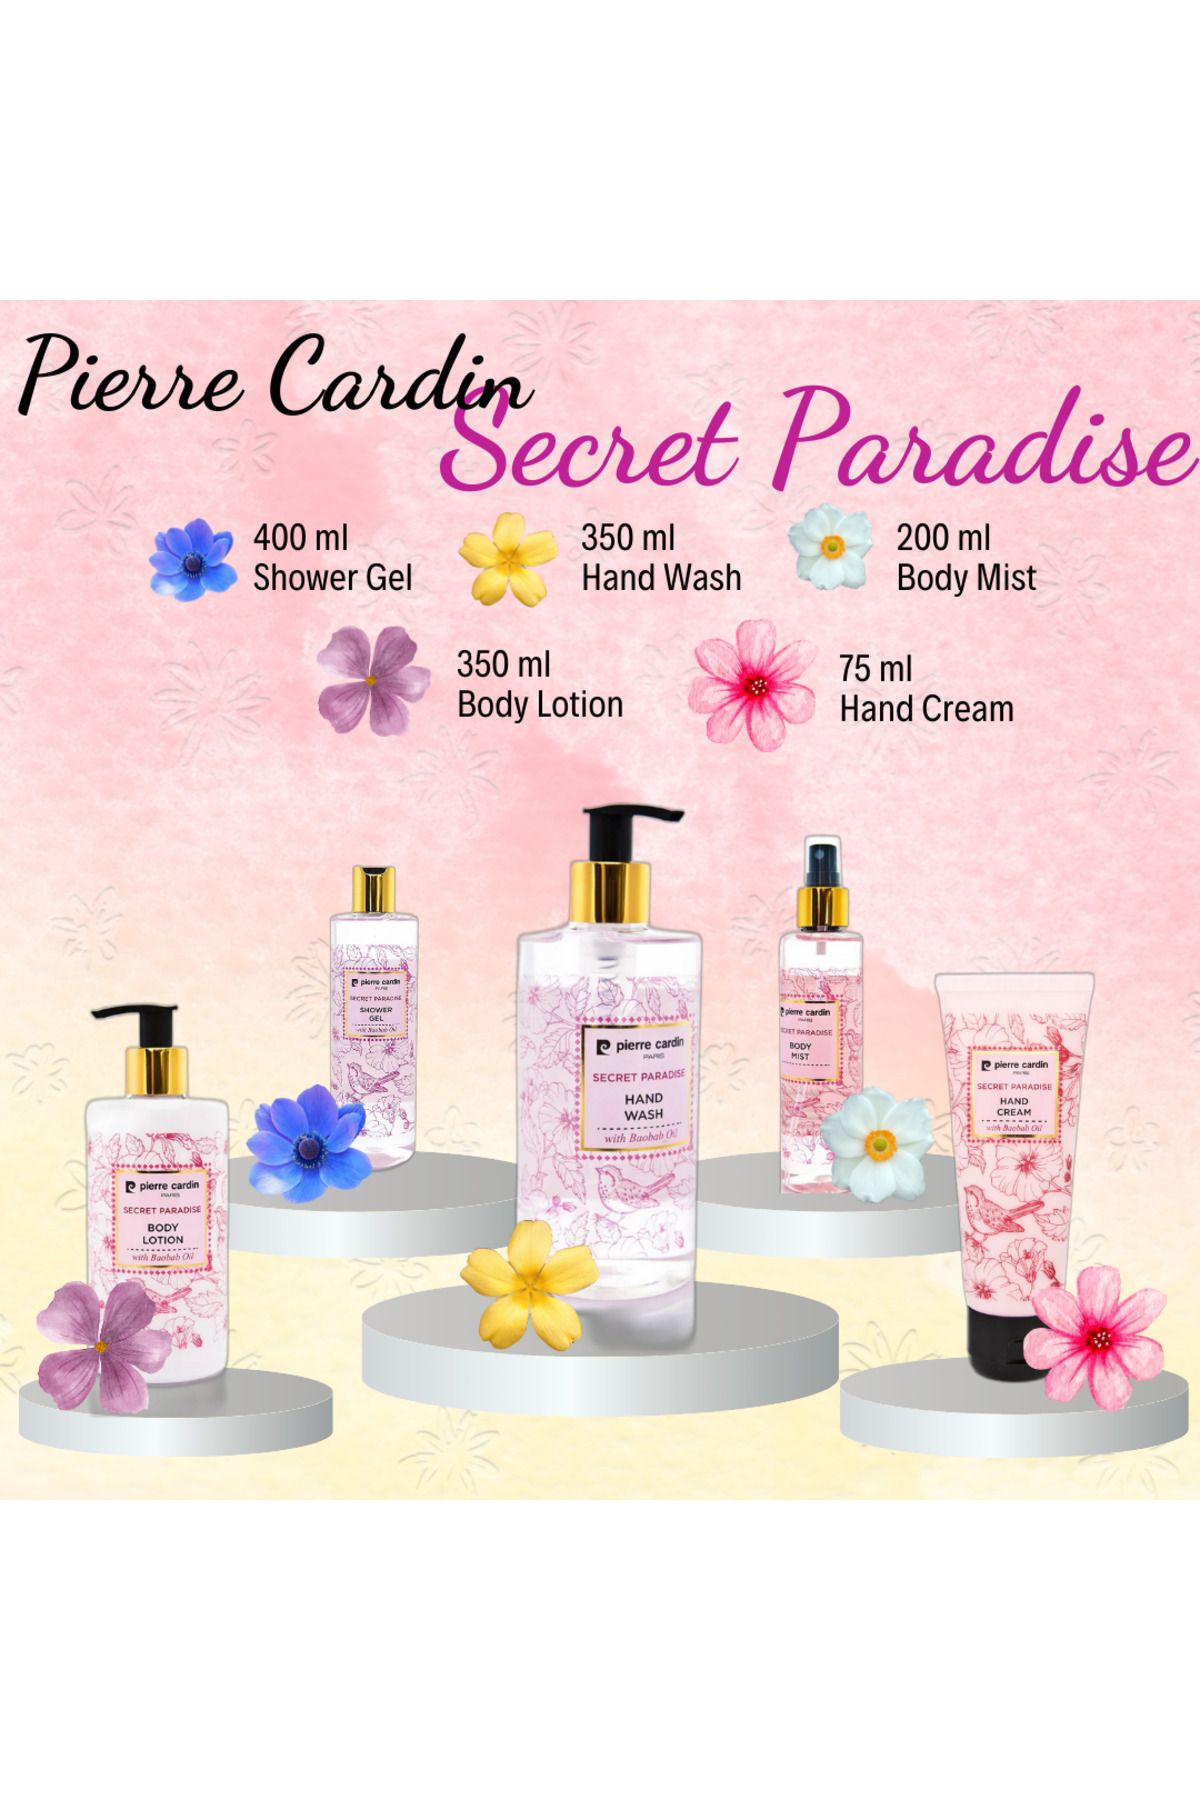 Pierre Cardin Secret Paradise Special Product Set